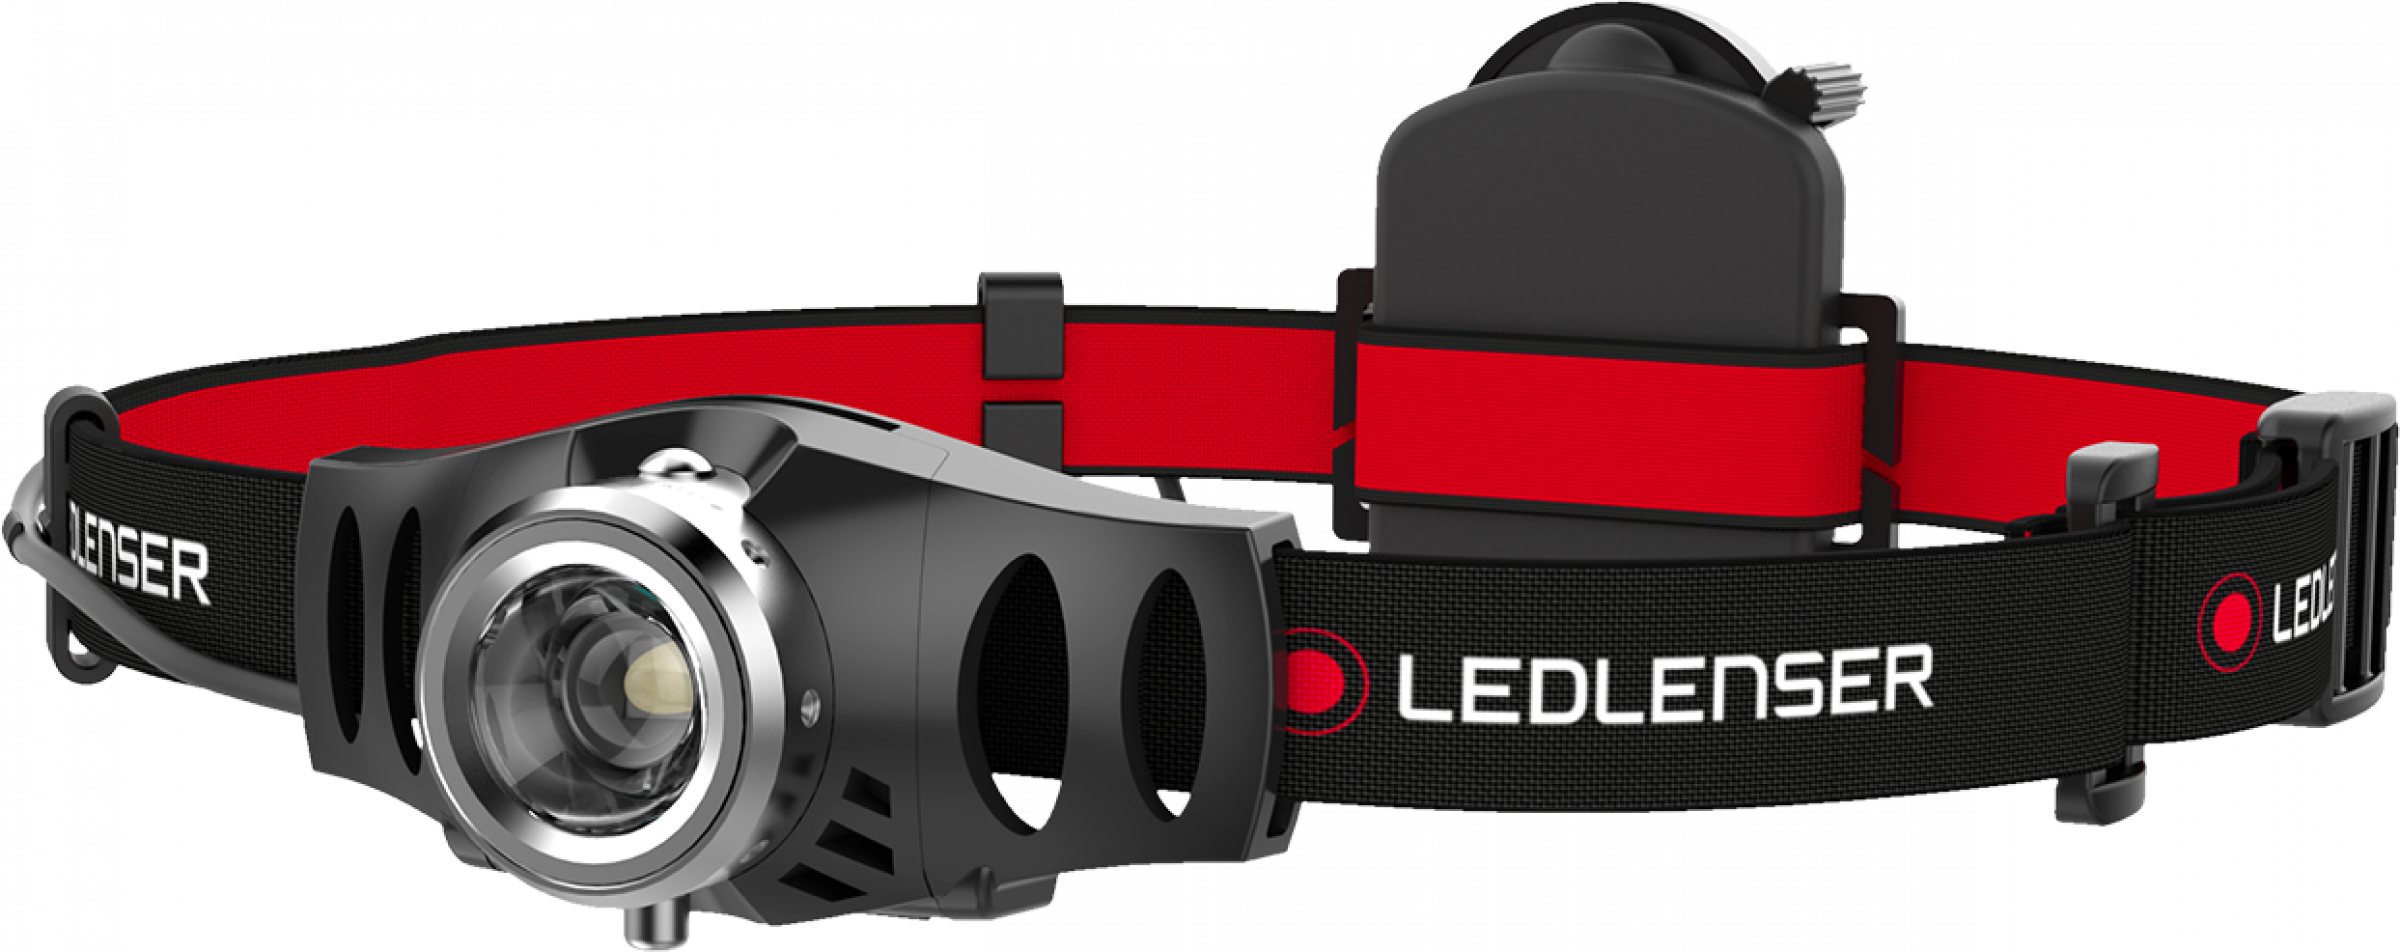 Zweibrüder Led Lenser H-Series H3.2 Headlight - 1er Box